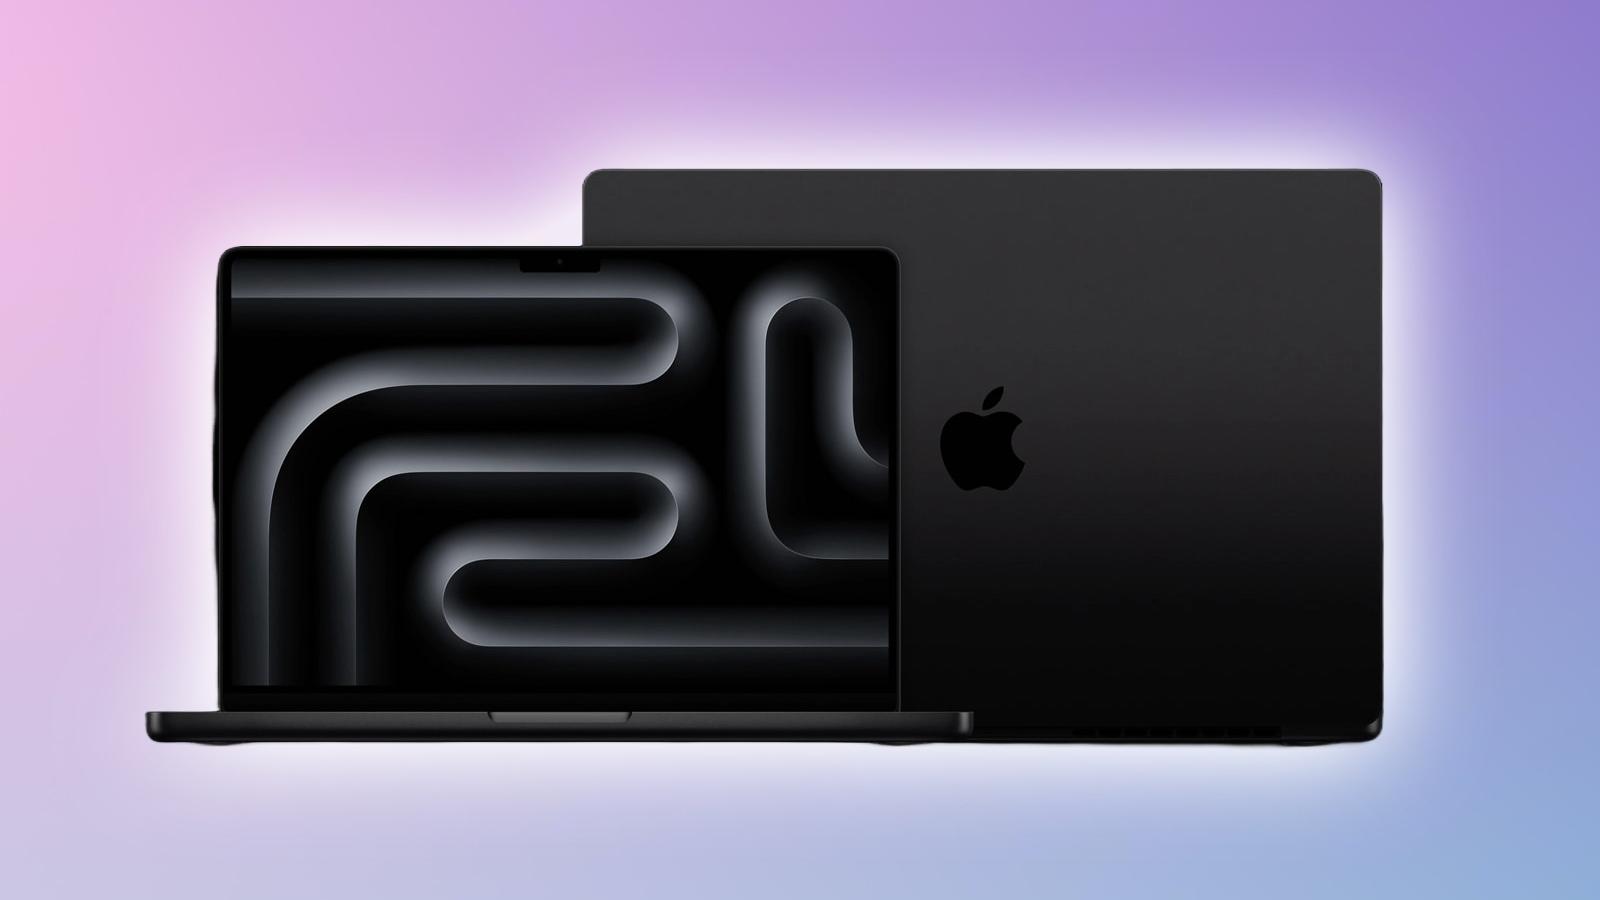 MacBook Pro M2 vs M3: Which is better in 2023? - Dexerto